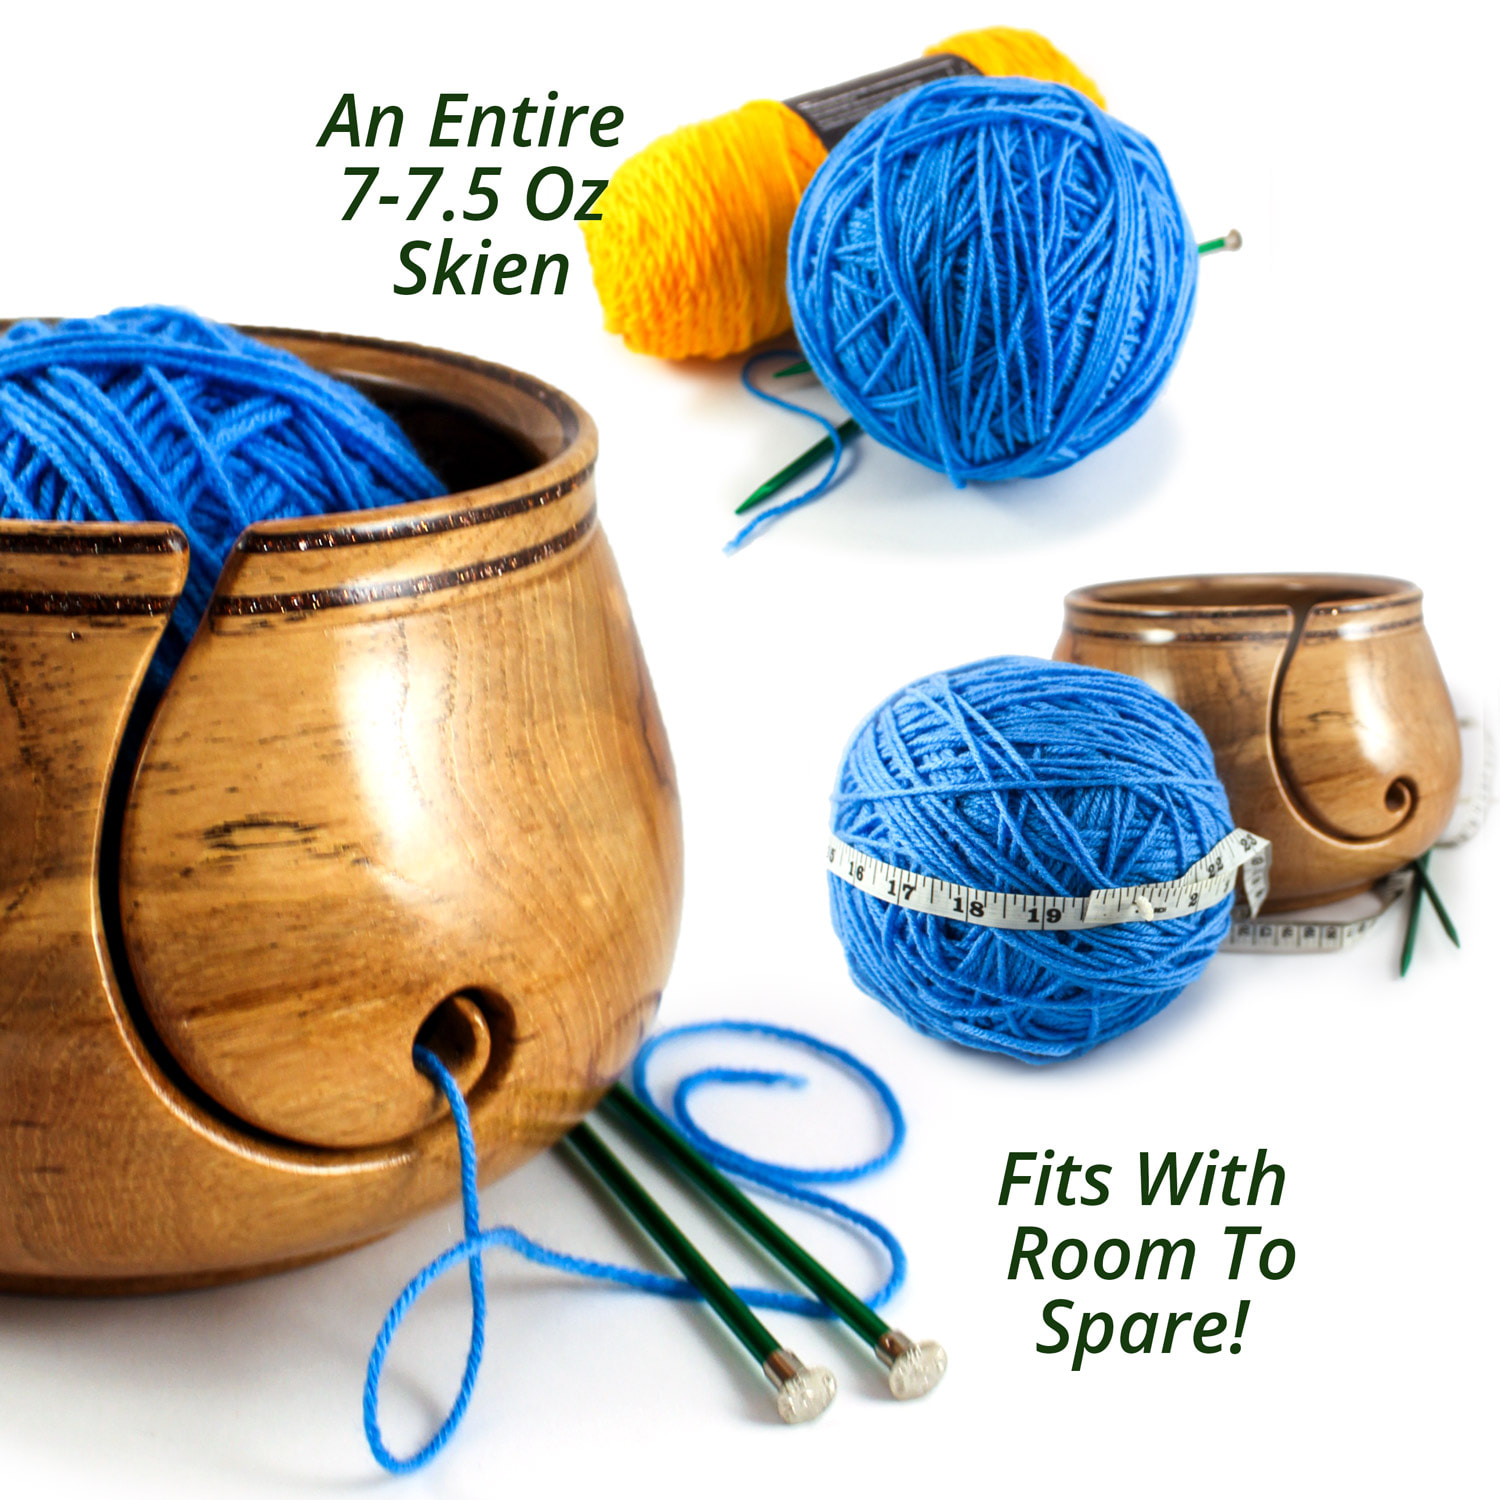 XXL Yarn Bowl, Pecan, Artisan Crafted for Knitting, Crochet, Yarning